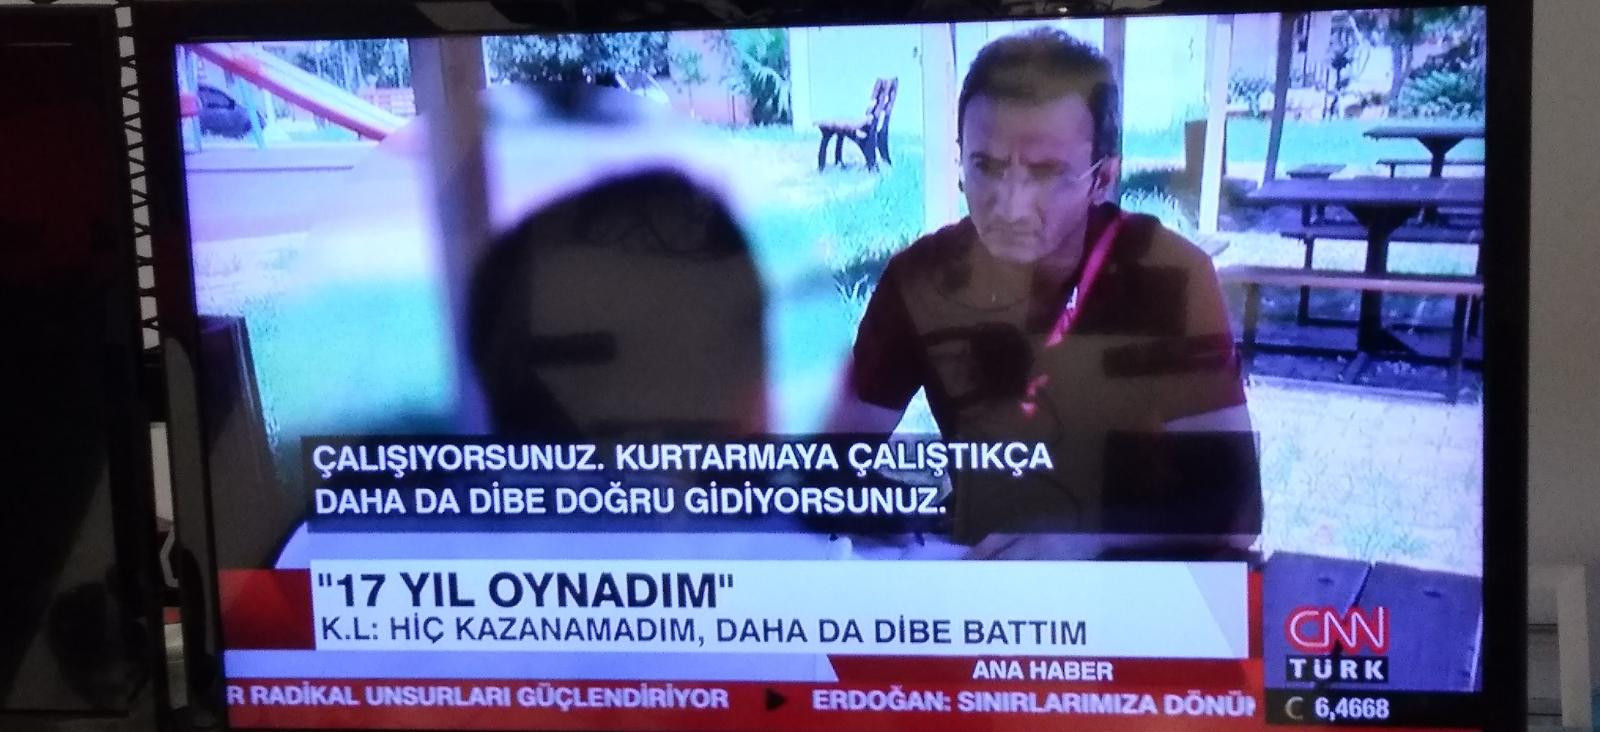 CNN Türk'ten dikkat çeken yasadışı bahis haberi: Patronum sağolsun - Resim: 1